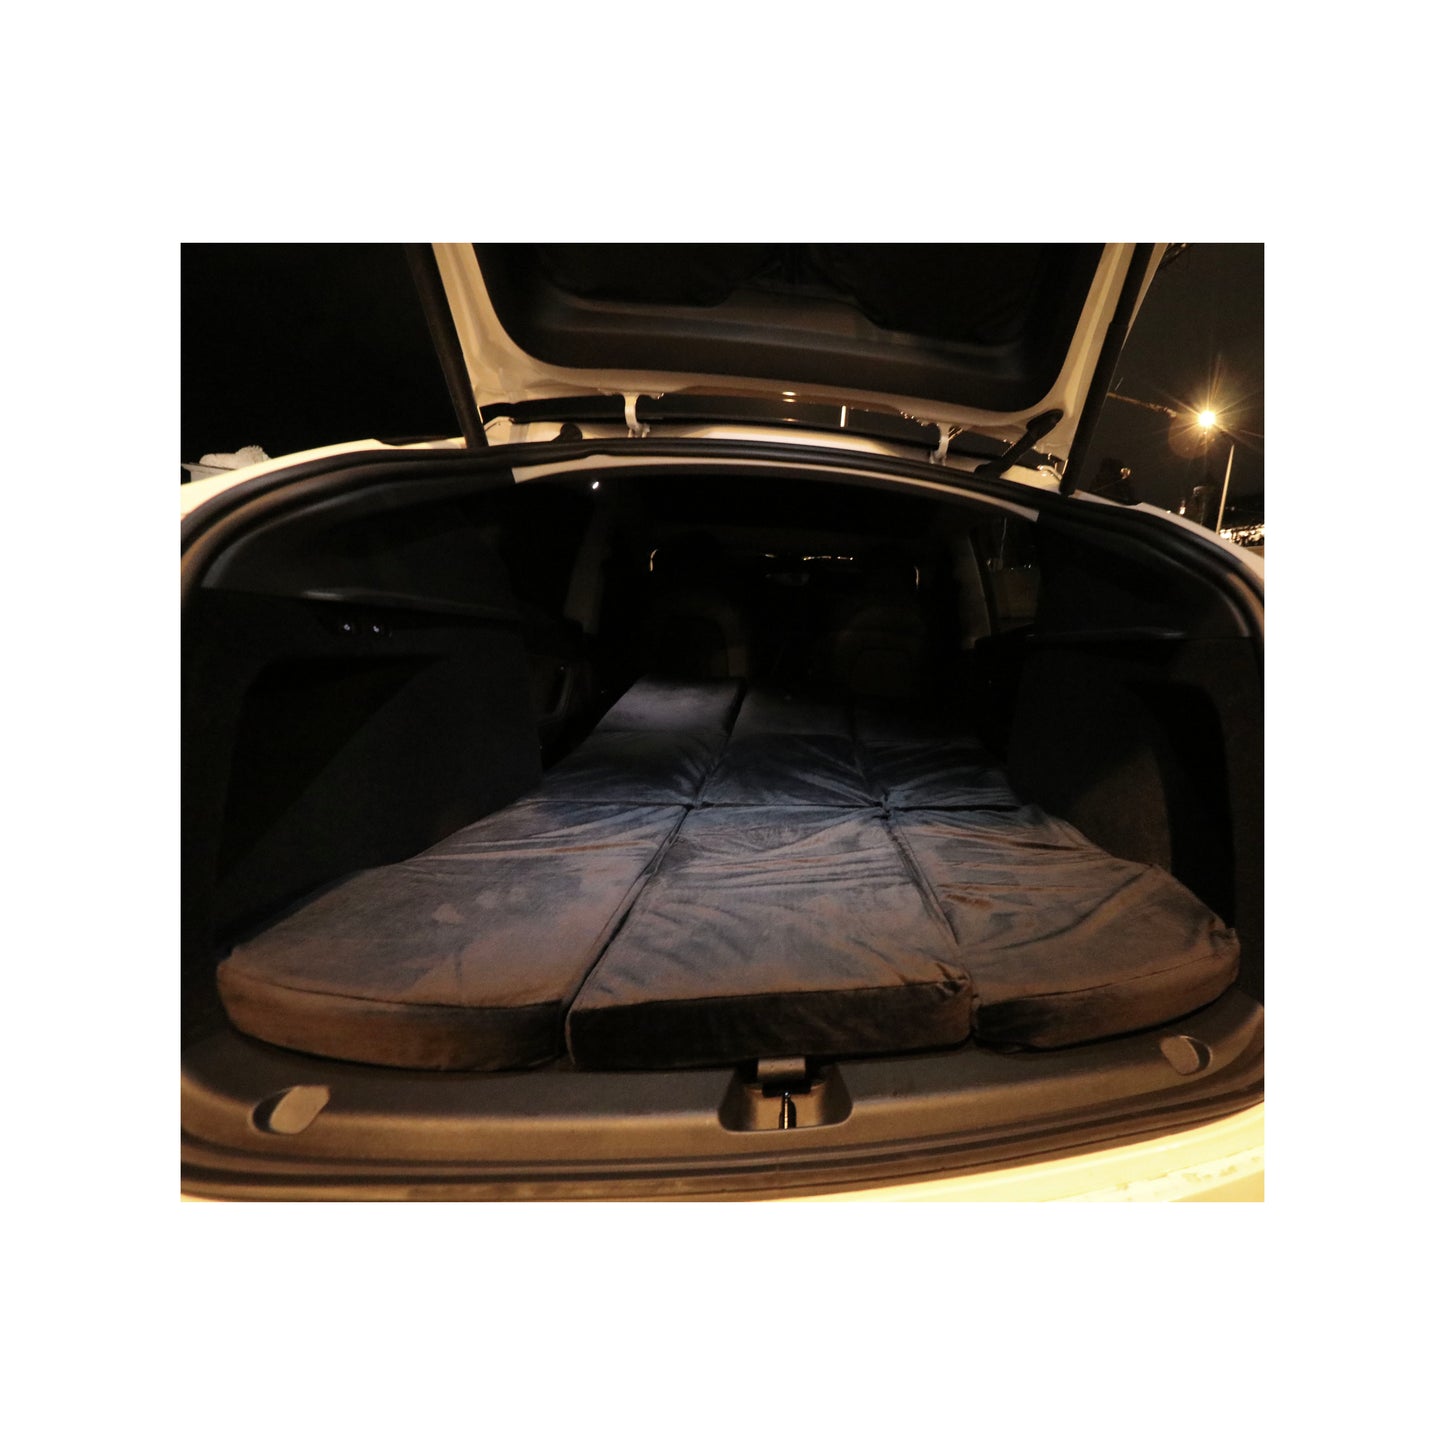 EV-MATS Tesla Model Y matrac és hordtáska prémium memóriahabos matrac, tökéletesen illeszkedik a Tesla Model Y méreteihez, kivételes kényelmet biztosít alváshoz, és könnyedén tárolható a csomagtartóban